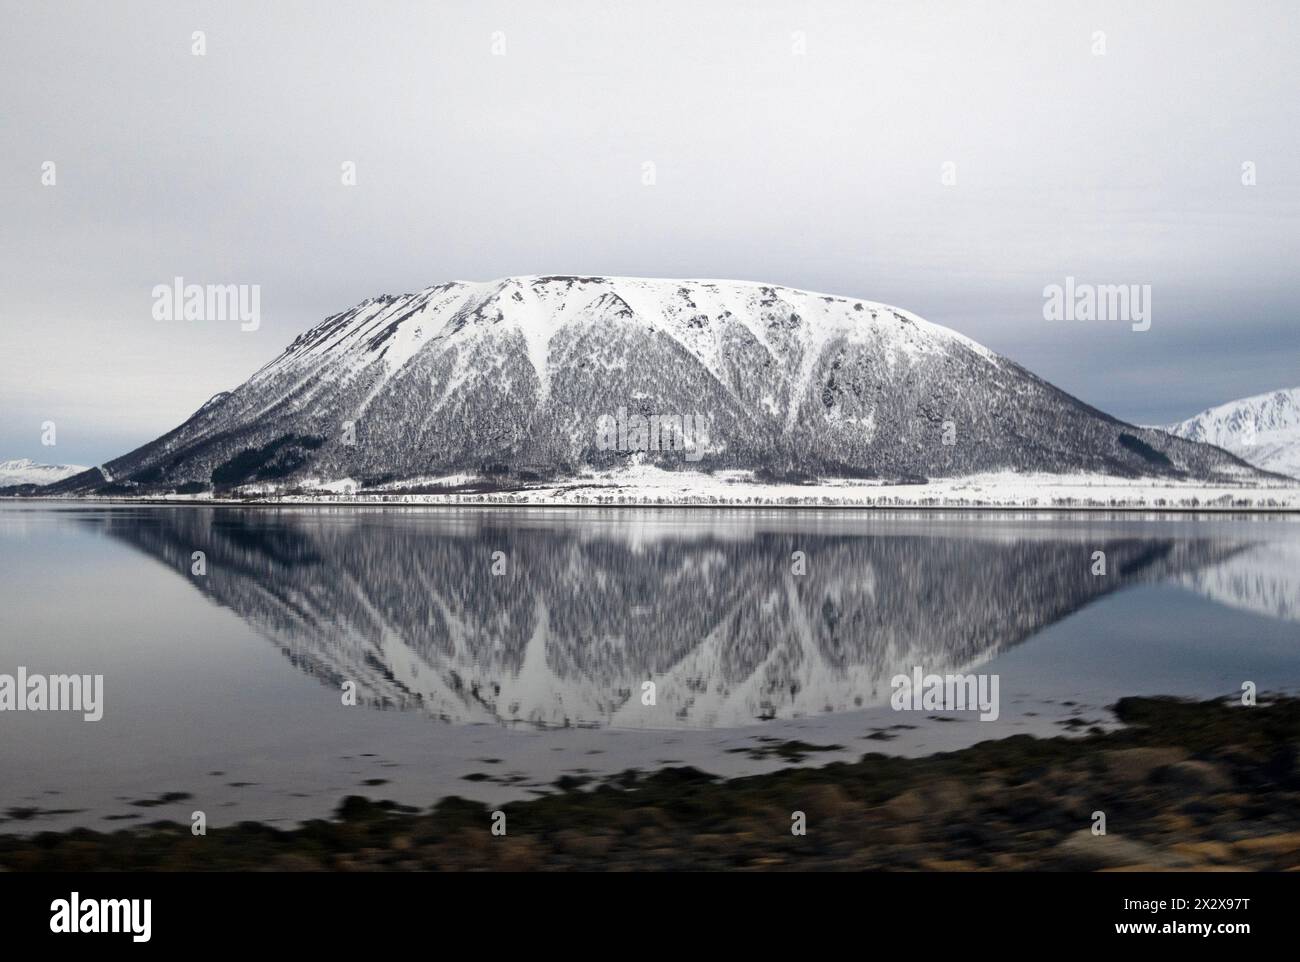 07.04.2023, Andoy, Nordland, Norvège - paysage de montagne sur la côte en hiver. 00S230407D245CAROEX.JPG [AUTORISATION DU MODÈLE : NON APPLICABLE, PROPRIÉTÉ RELE Banque D'Images